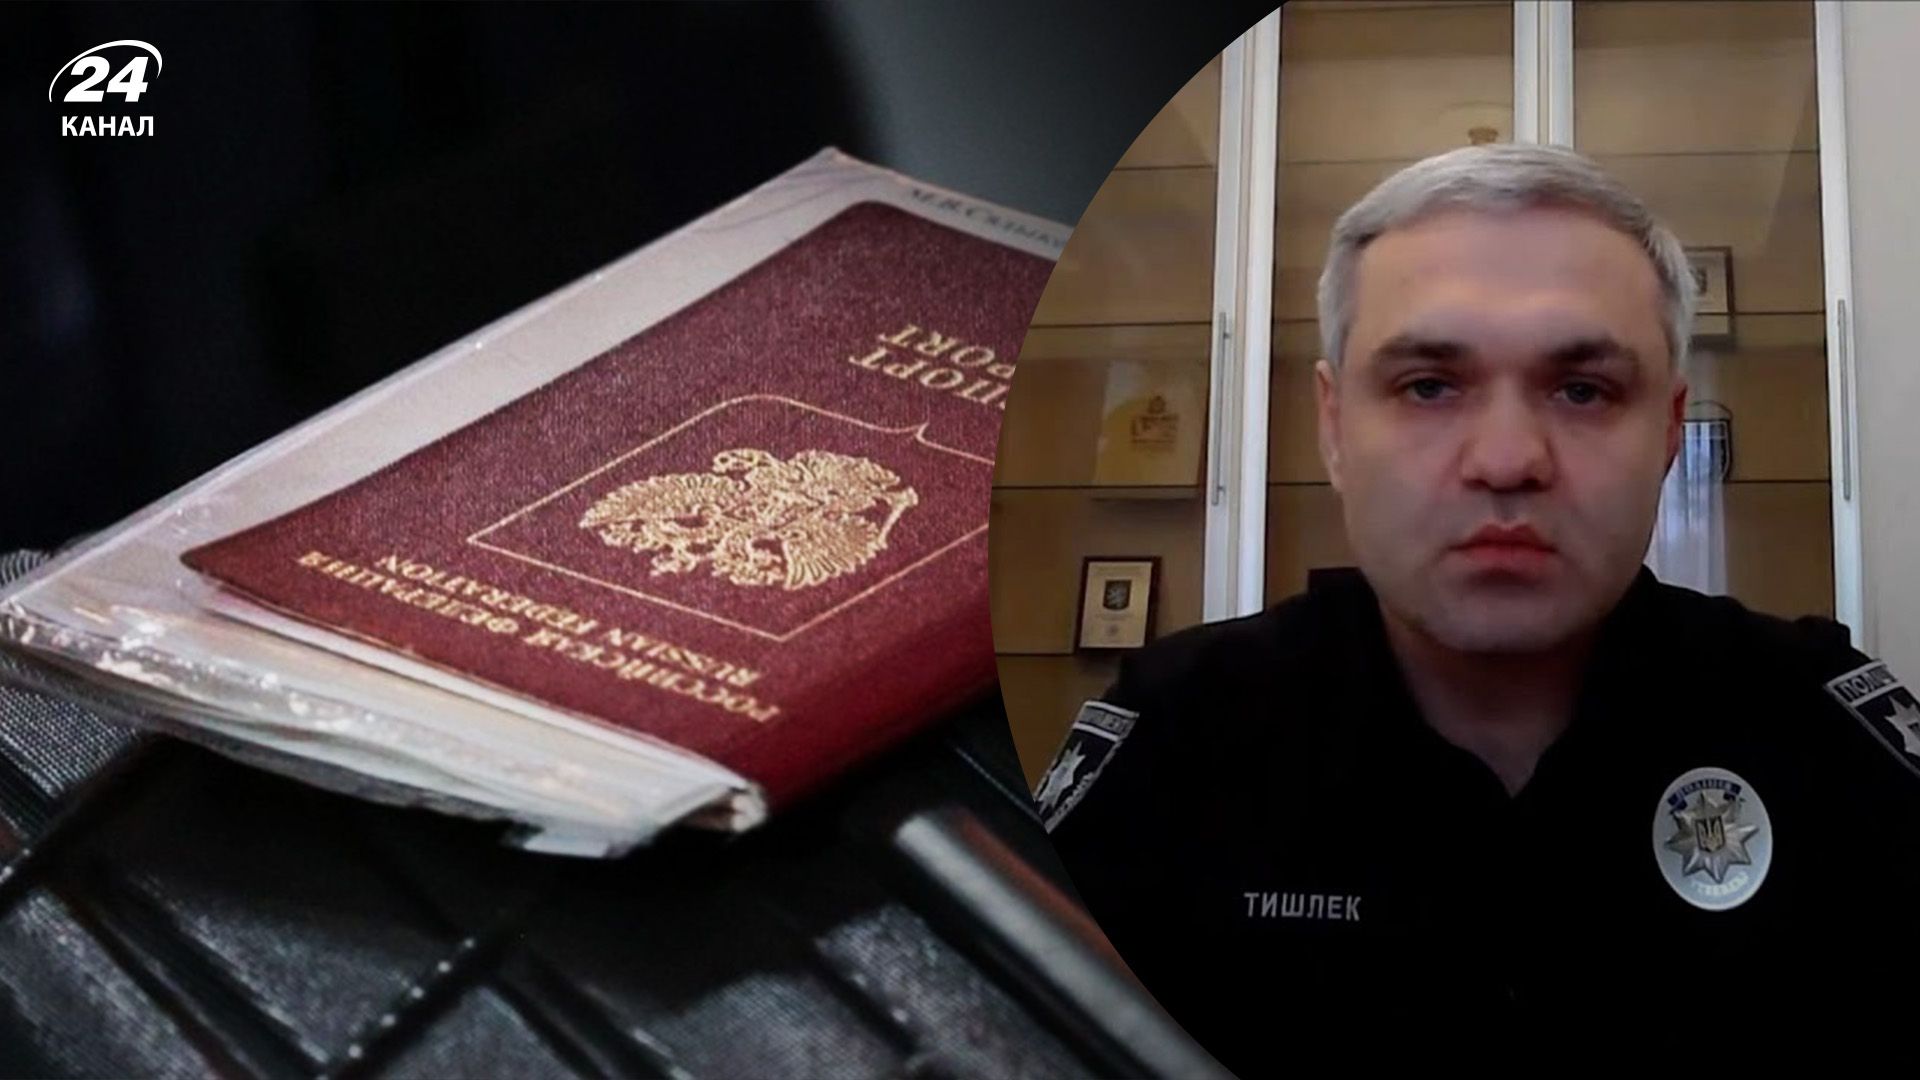 У жены заместителя главы Нацполиции есть паспорт России - Тишлека проверяет комиссия МВД - 24 Канал